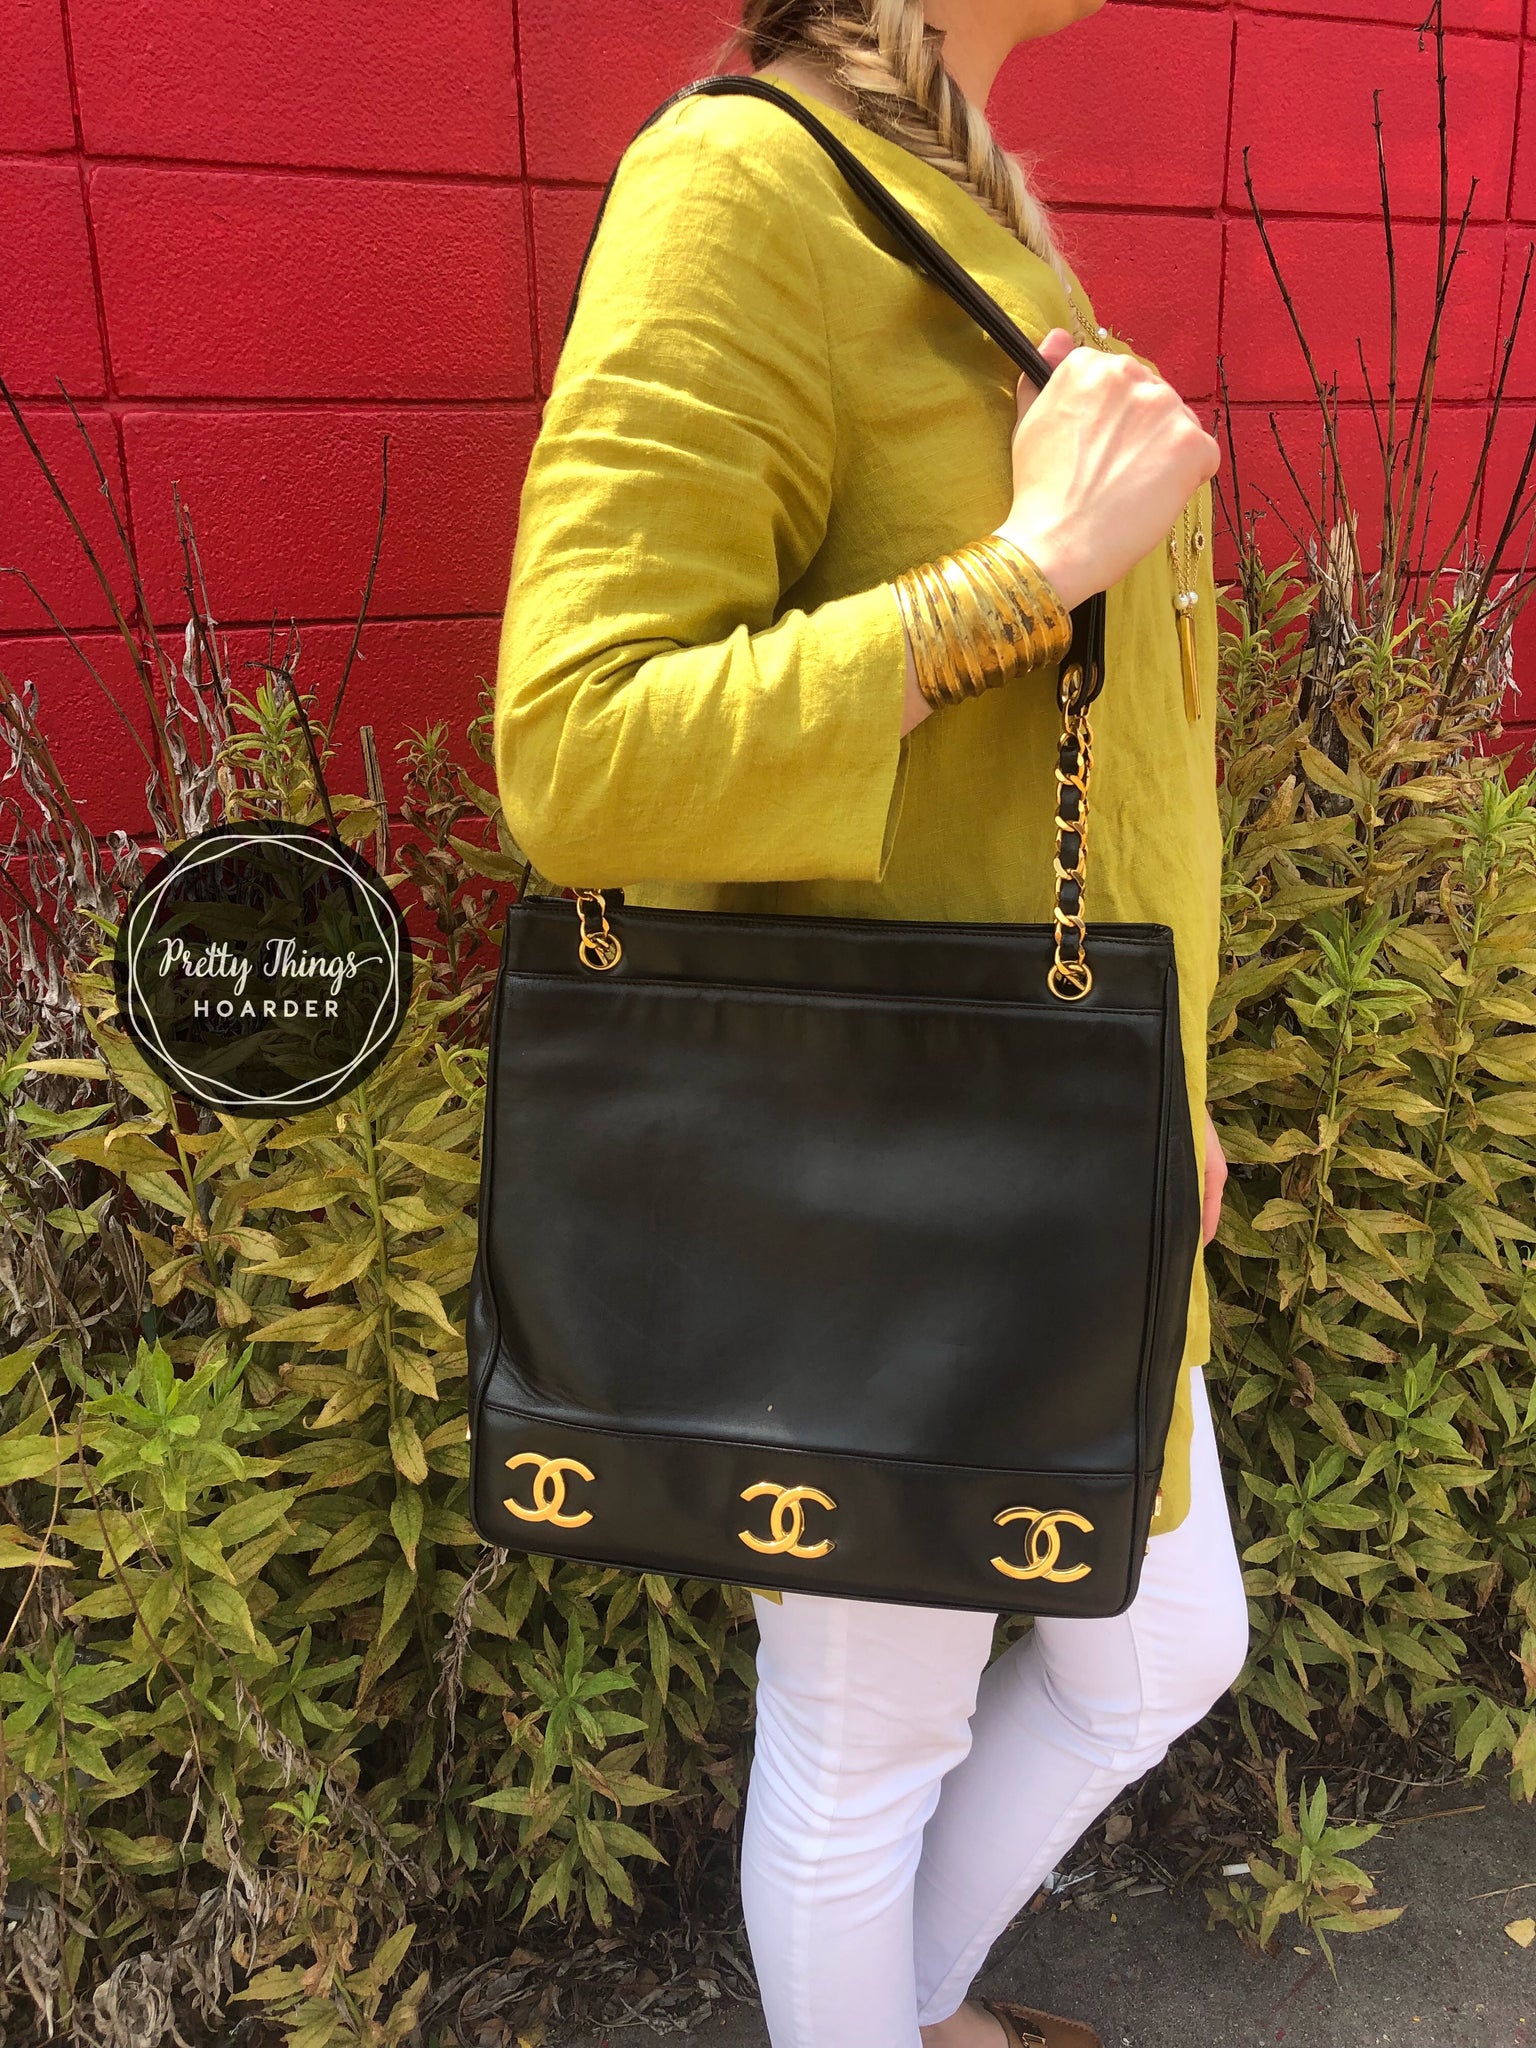 Vintage CHANEL black calfskin shoulder bag, tote bag with golden